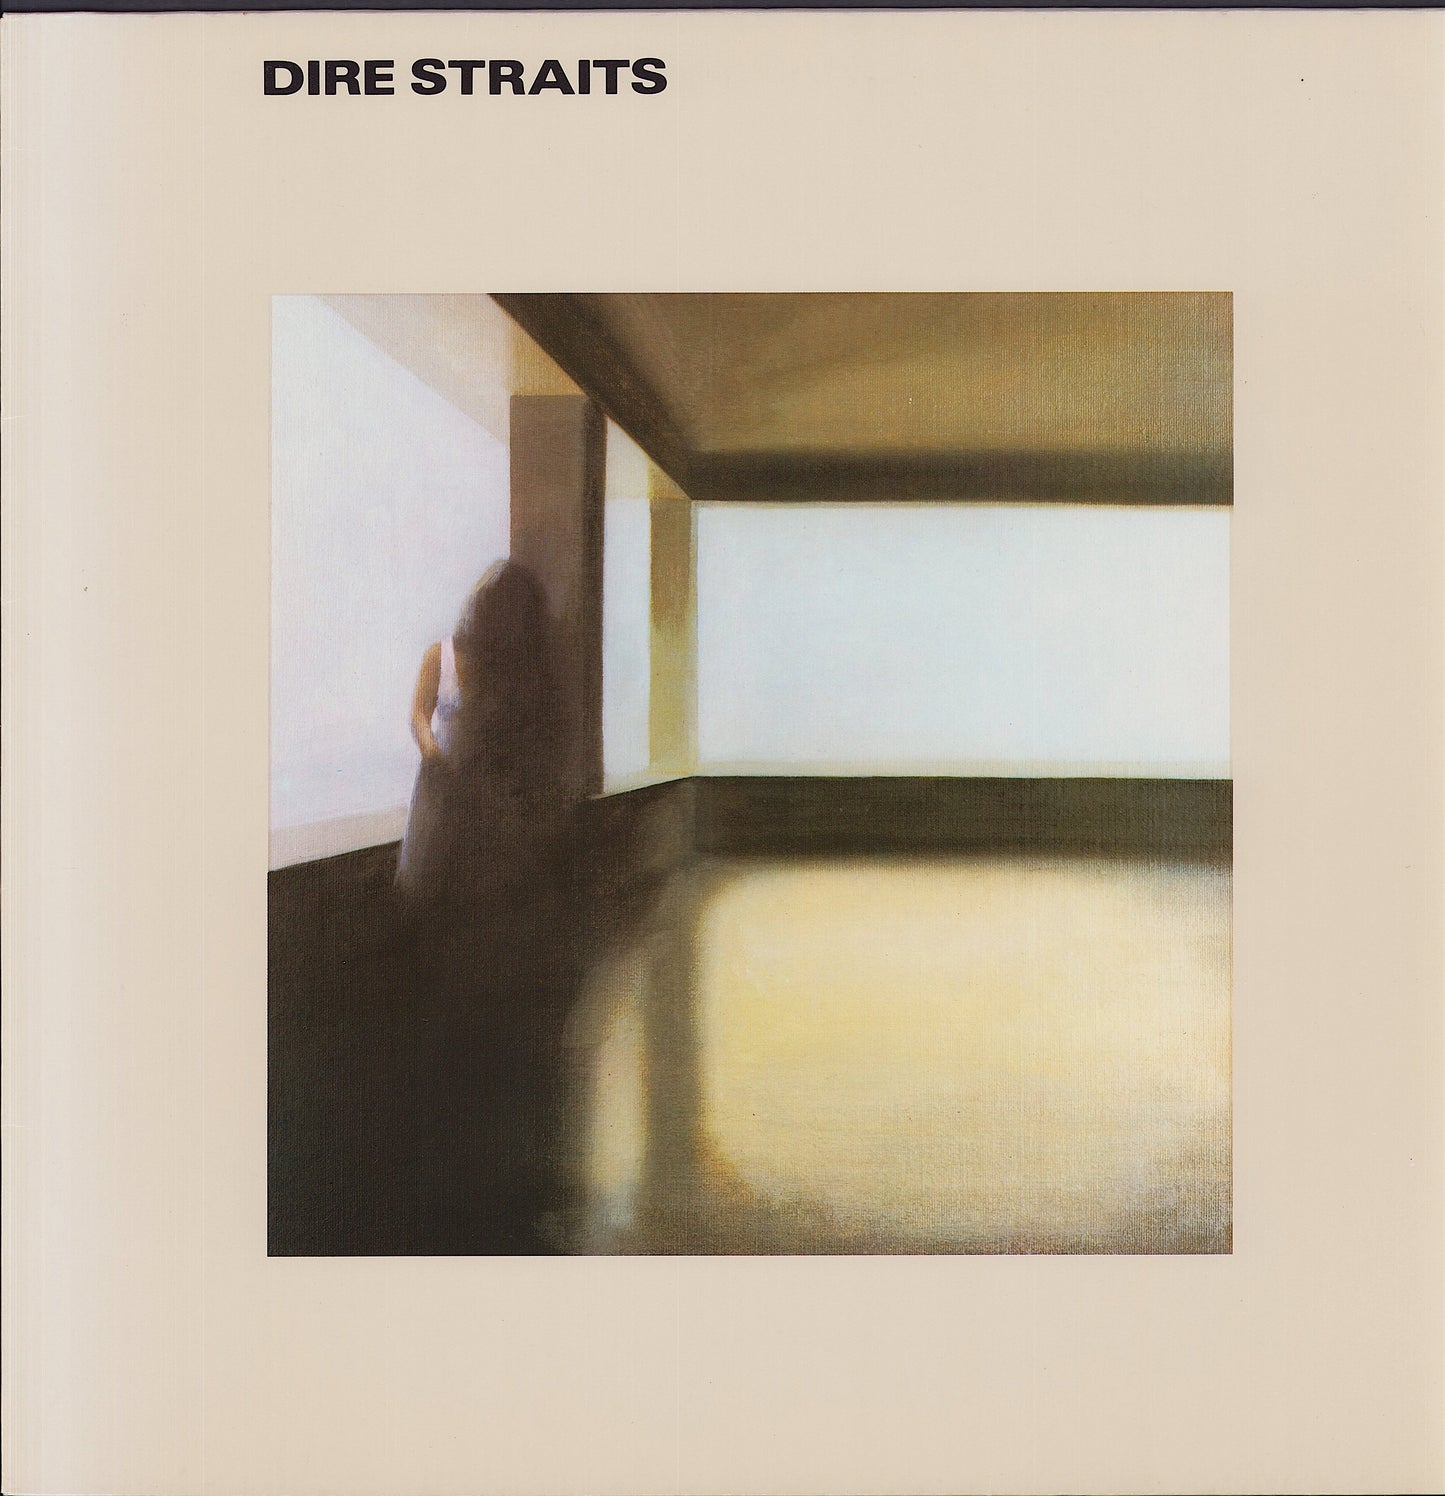 Dire Straits ‎- Dire Straits (Vinyl LP)